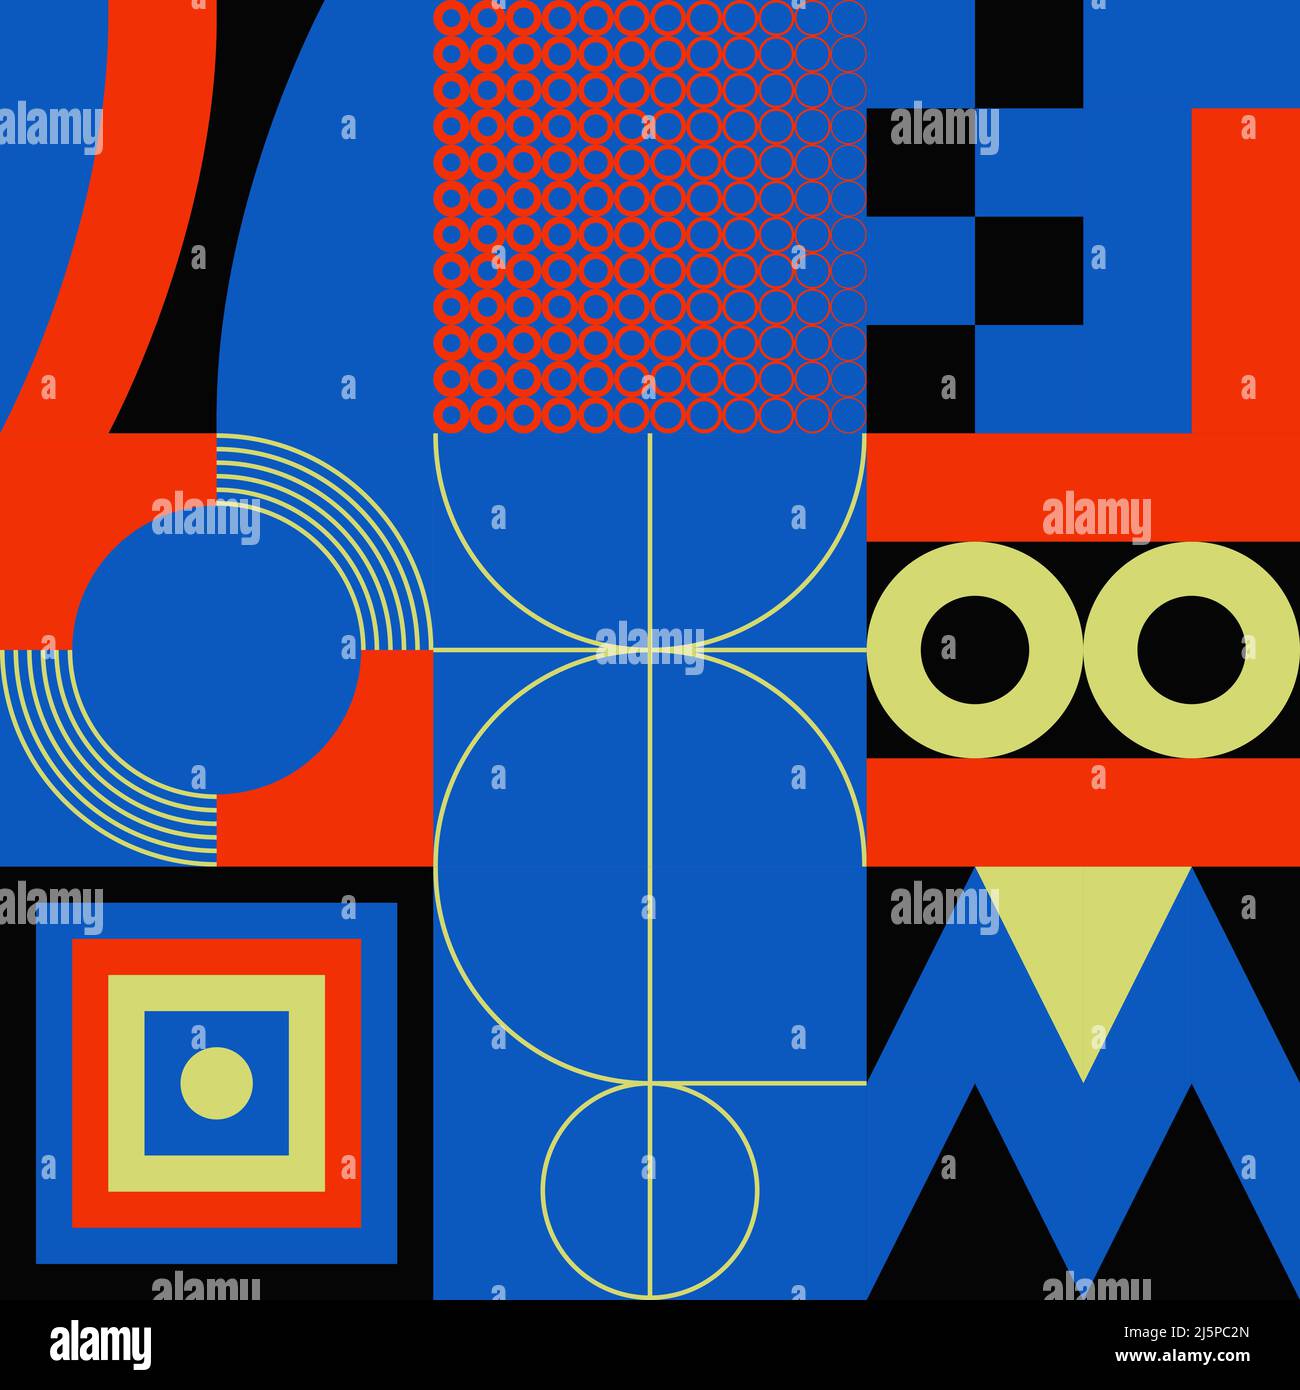 Motif graphique de collage numérique composé de formes abstraites vectorielles et de formes géométriques génératives, utile pour l'arrière-plan Web, la conception d'affiches, magagi Illustration de Vecteur